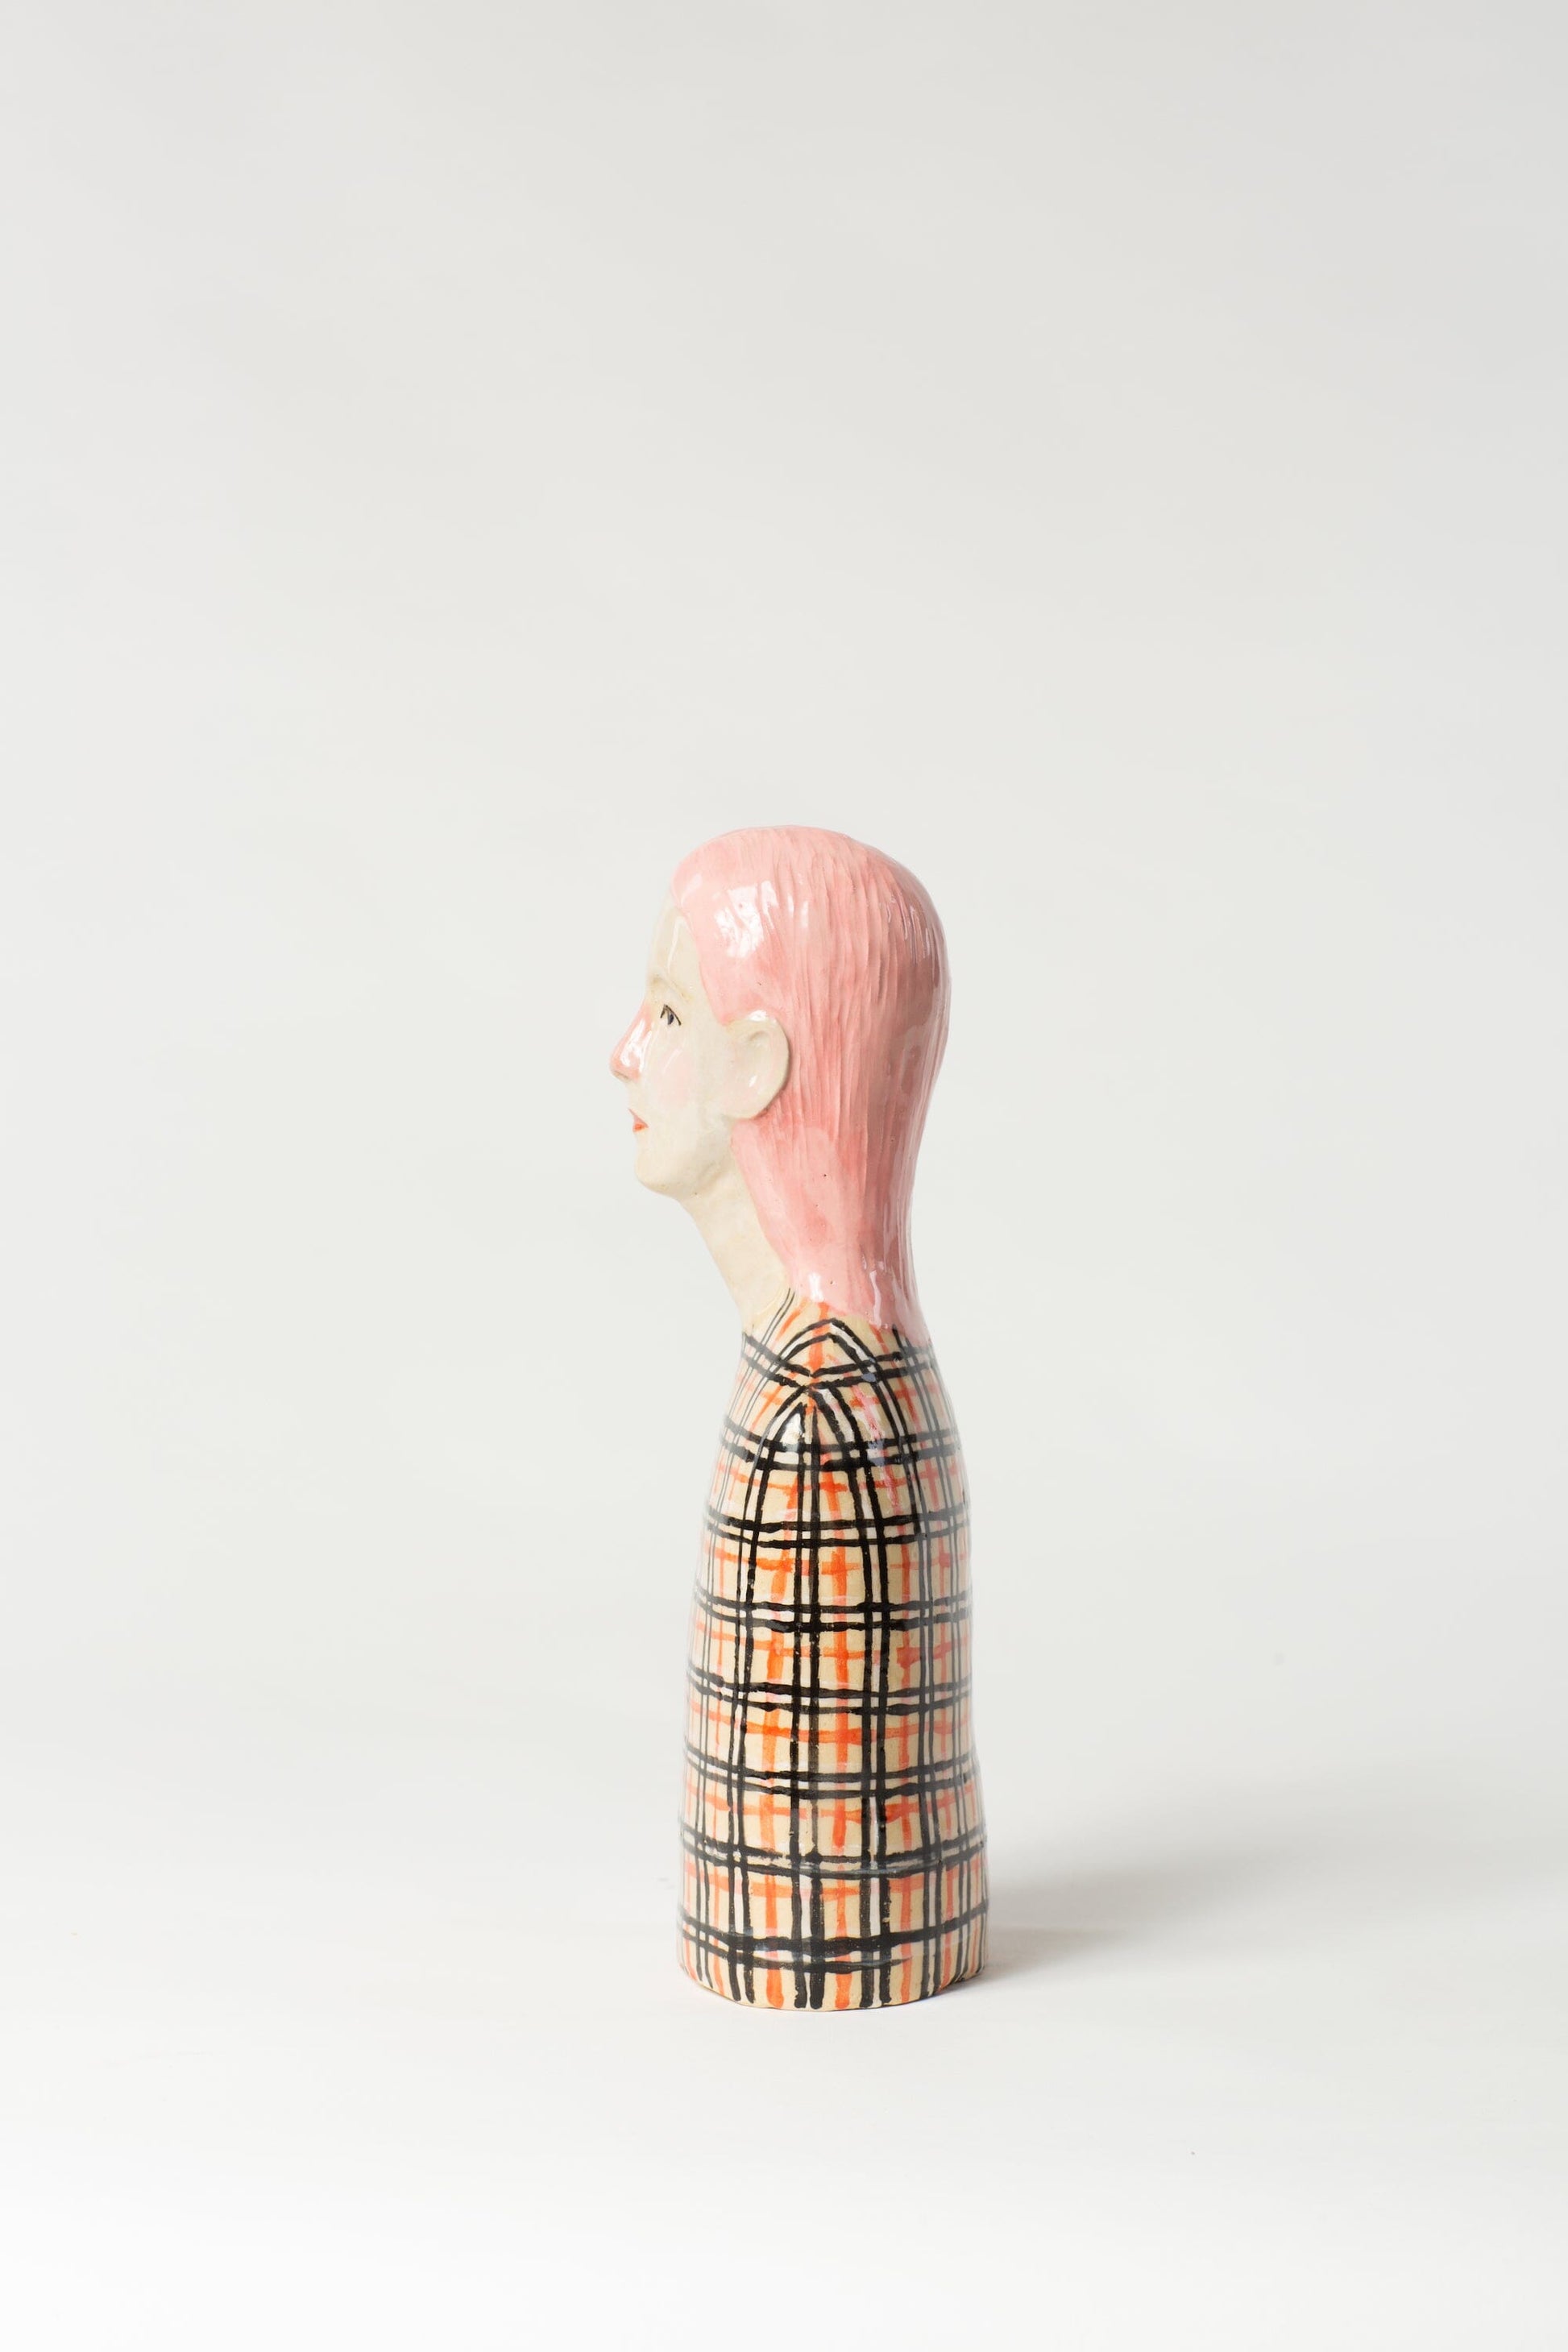 Robin Danielsson Untitled Figures 2023 (rutete genser med rosa hår) Art Salgshallen 